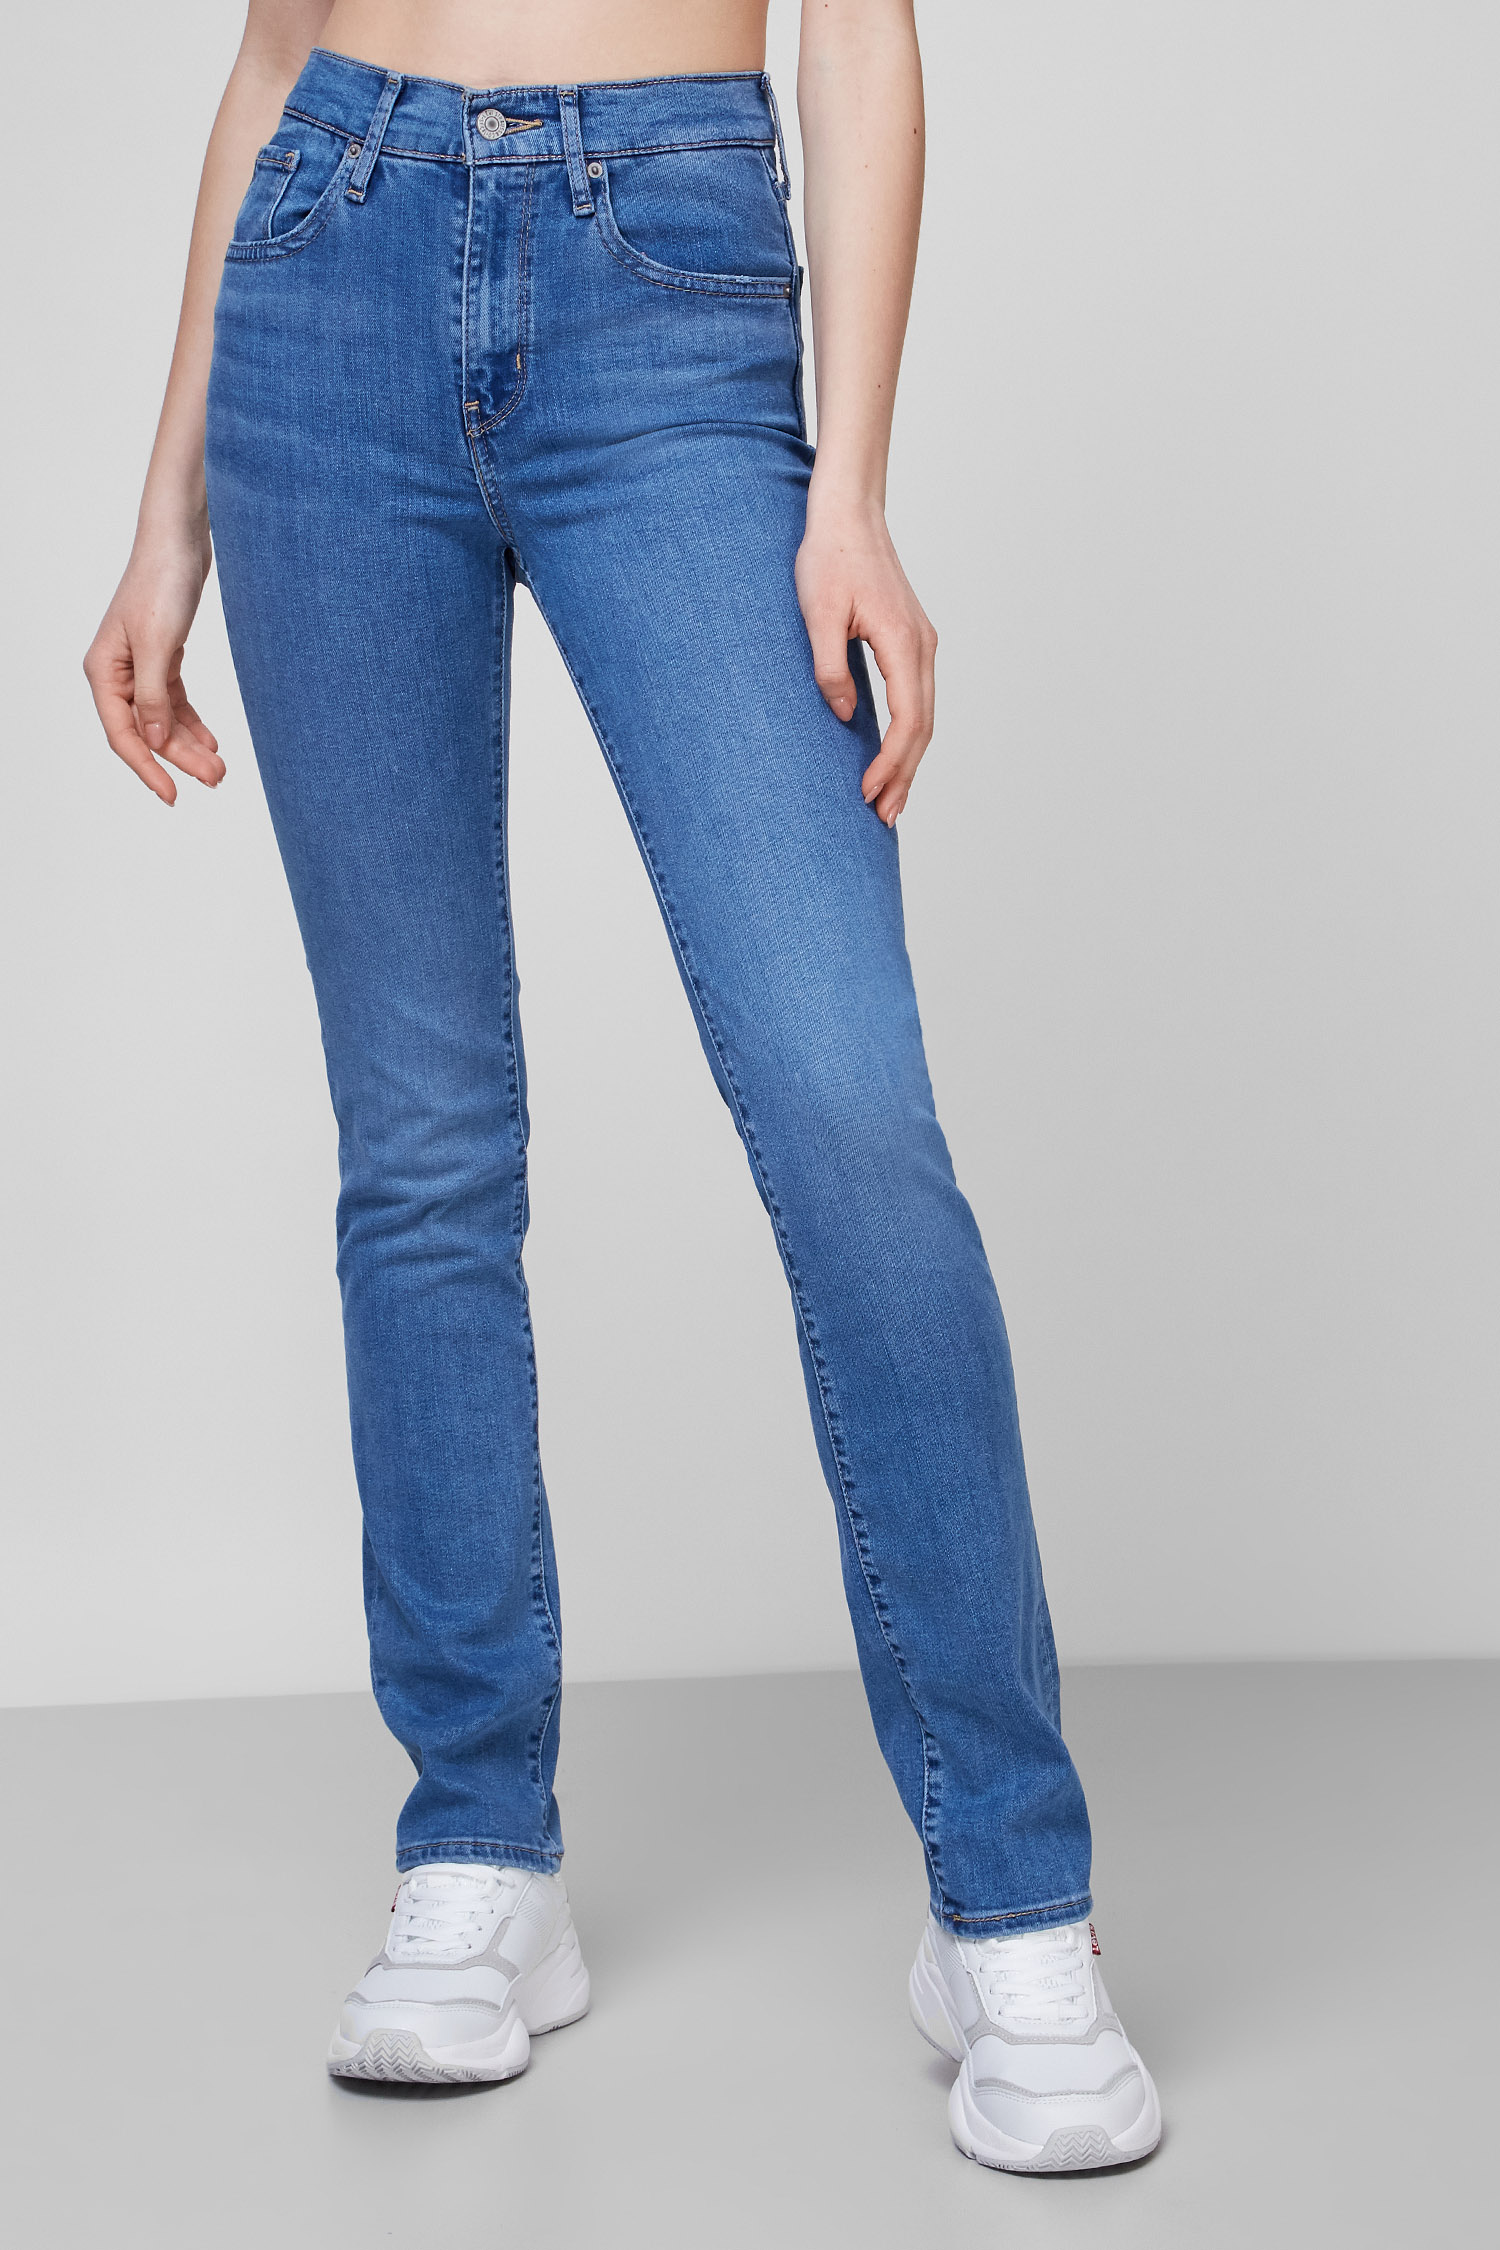 Синие джинсы 724™ High-Rise Straight для девушек Levi’s® 18883;0124